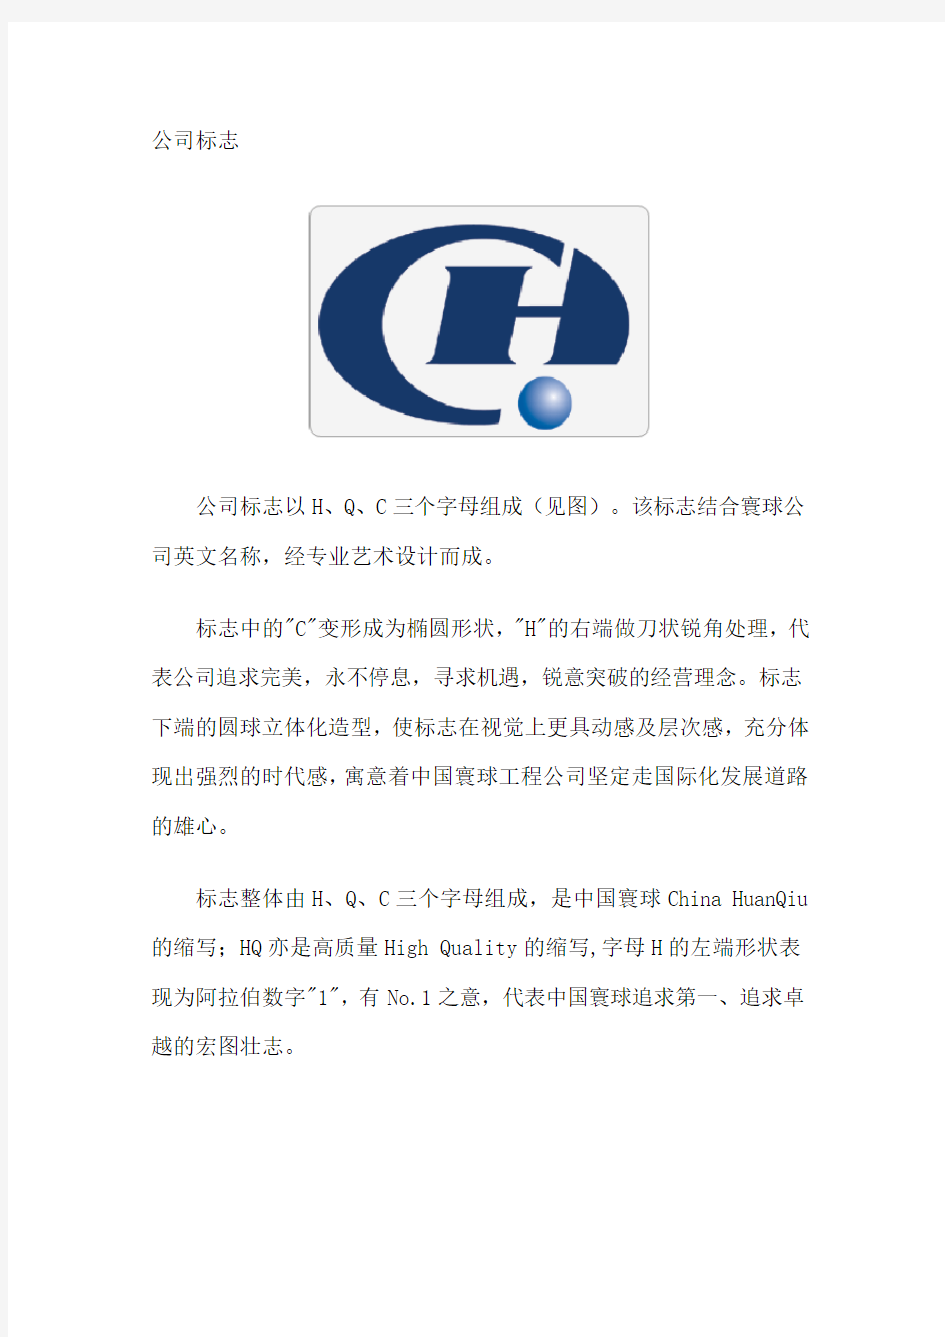 中国寰球工程公司VI手册